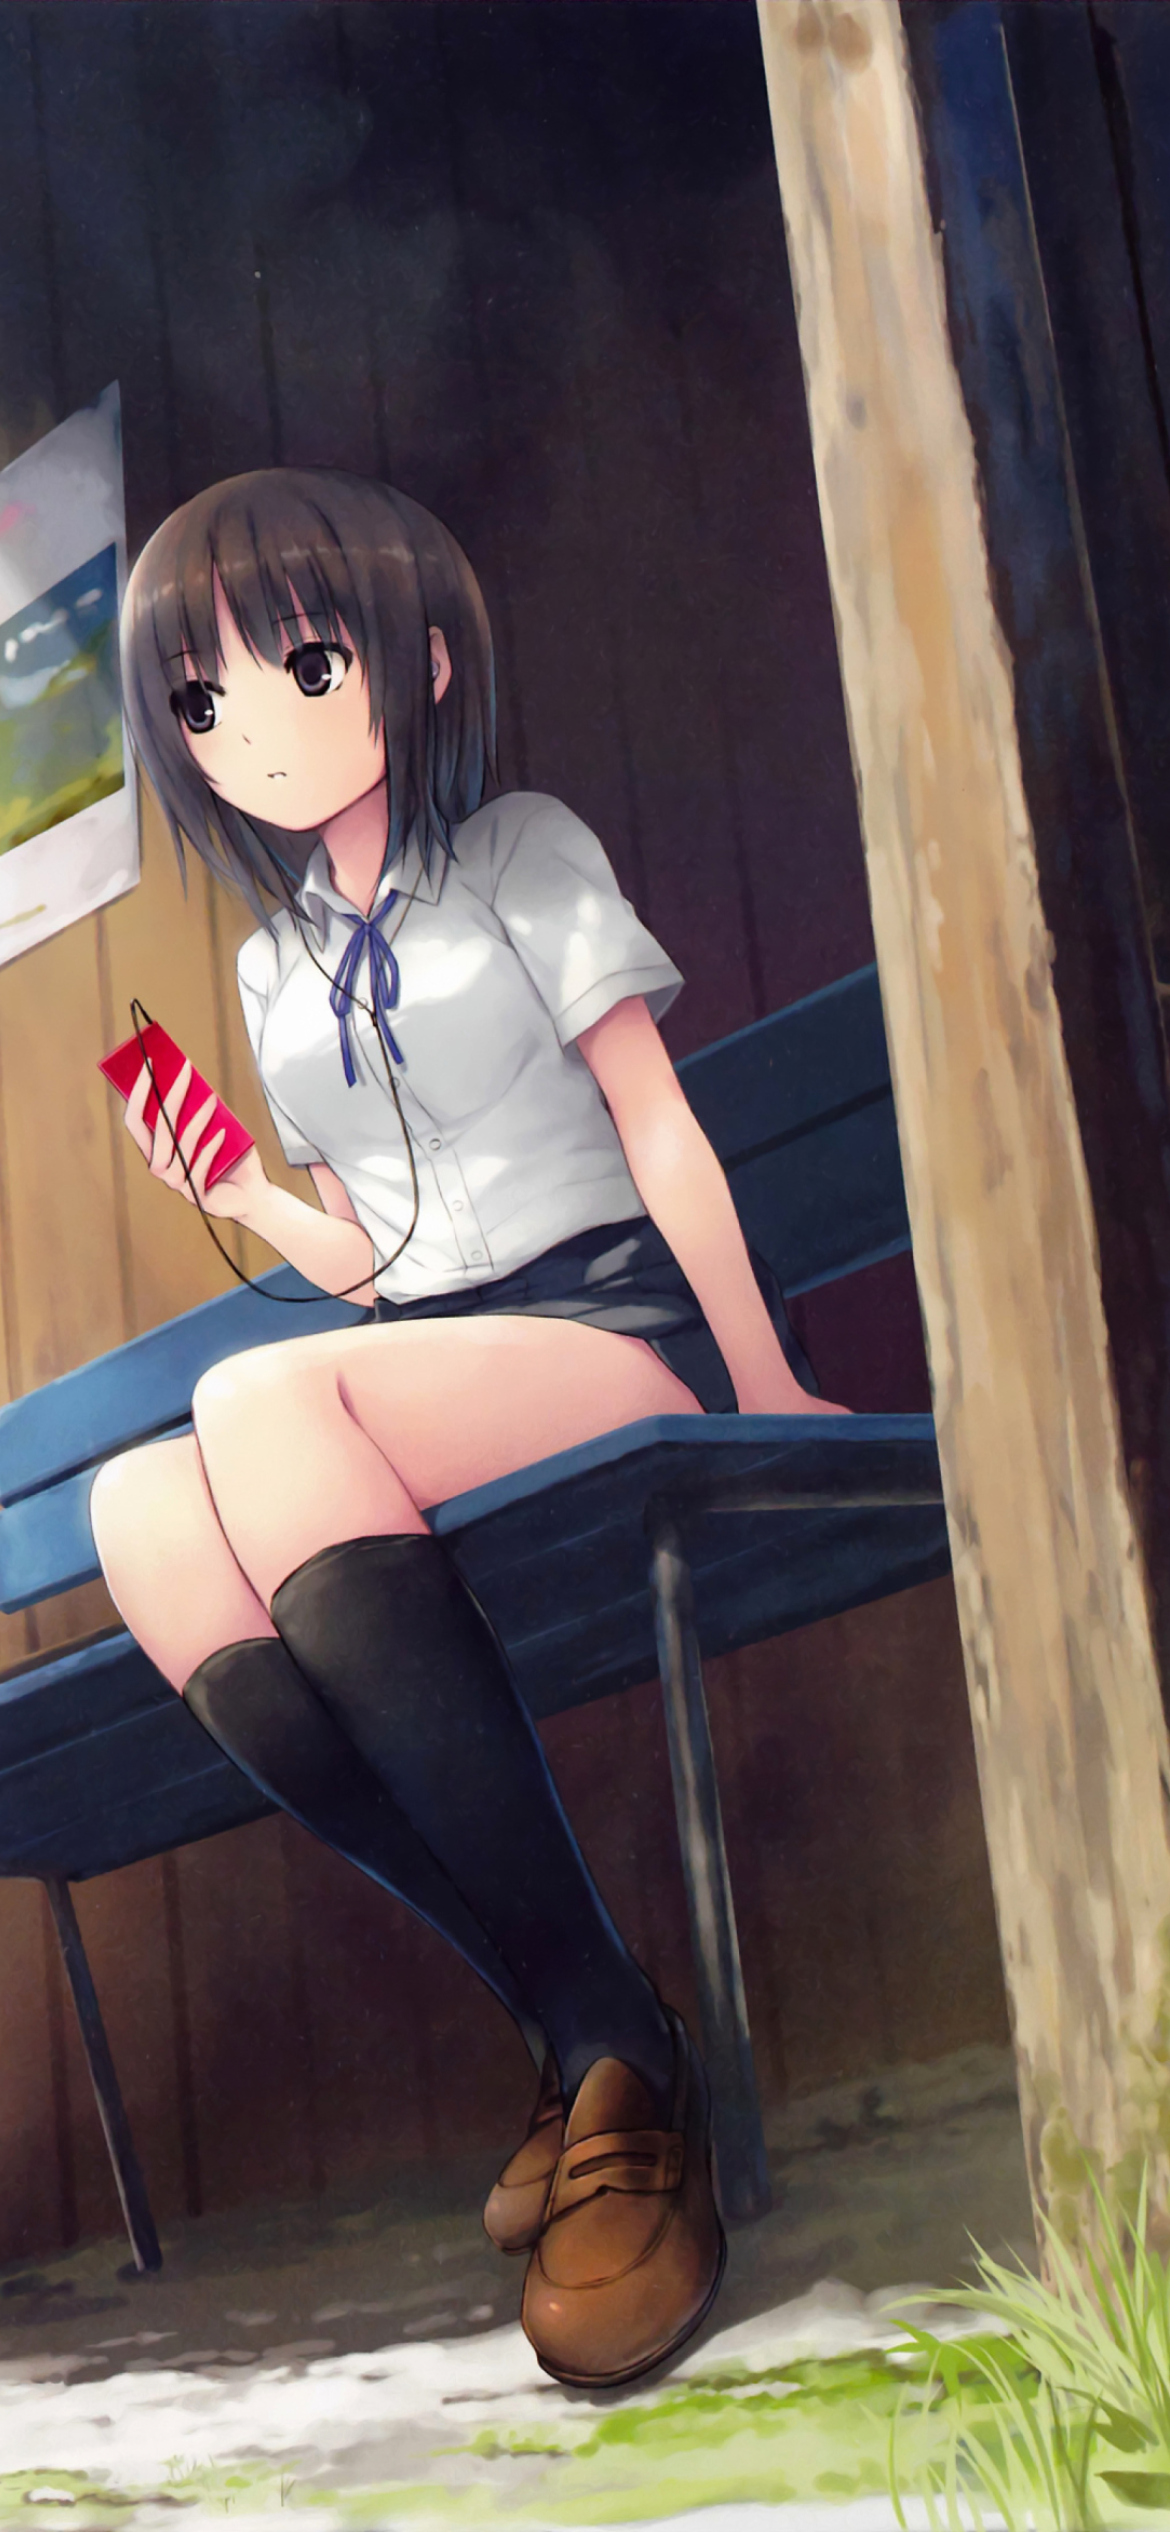 Das Anime School Girl Wallpaper 1170x2532